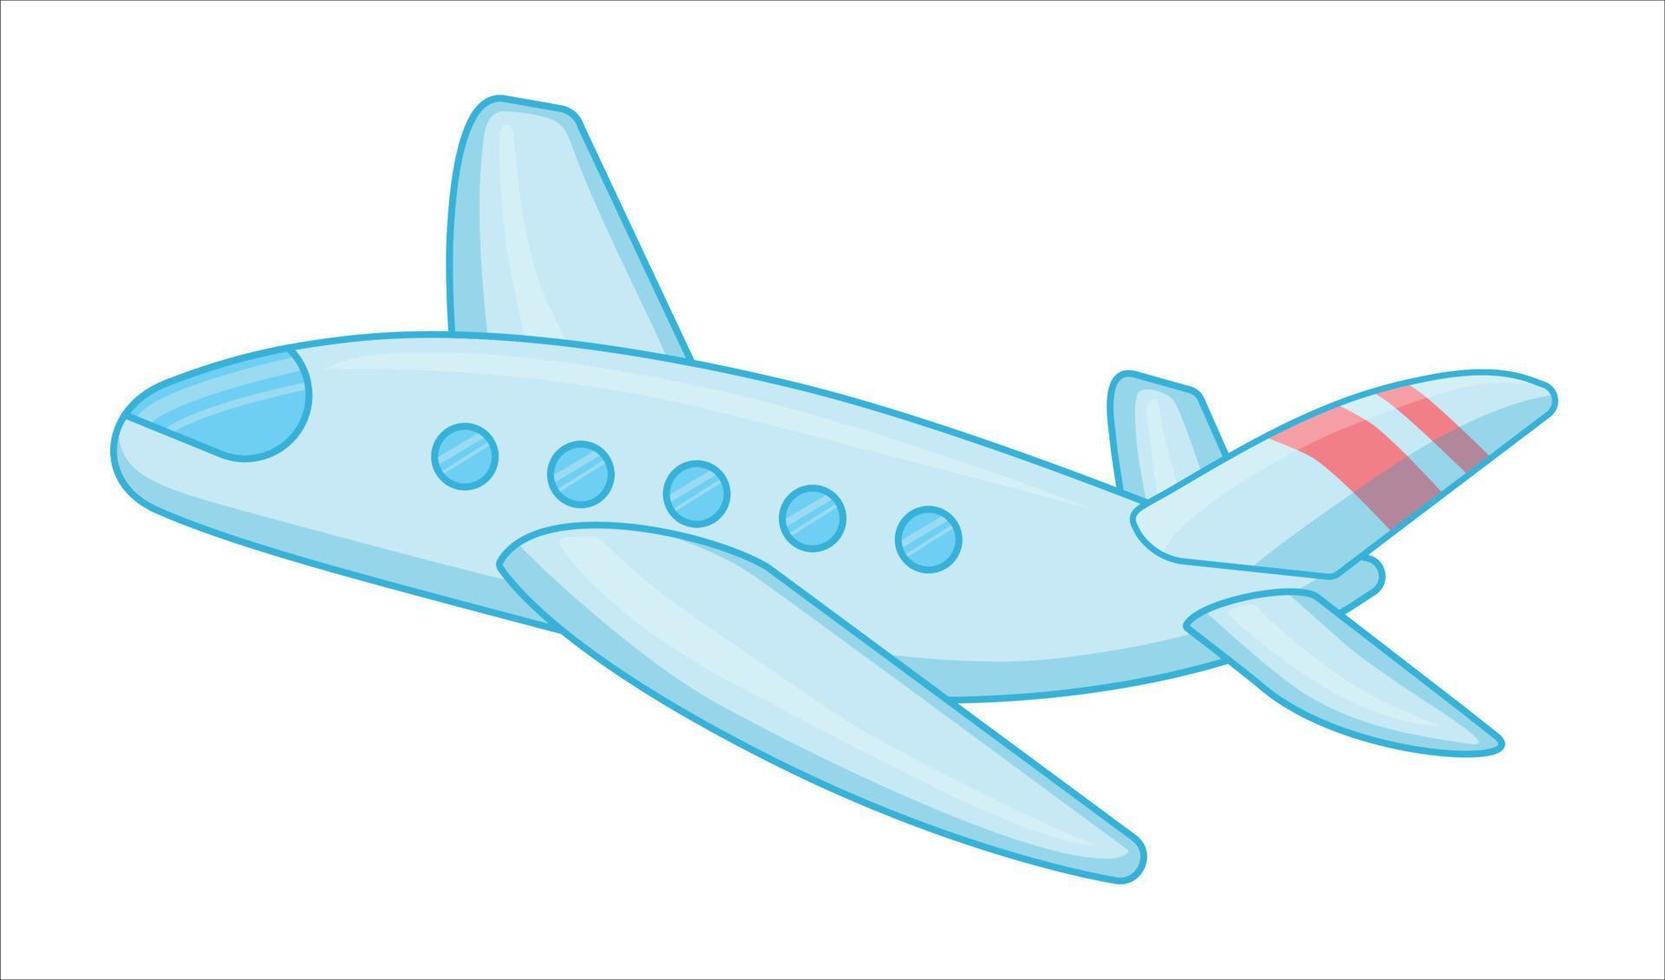 o avião está voando. aviões a jato viajam e descansam. voar de avião, viajar de avião para o aeroporto ou transporte aéreo. ilustração vetorial plana aérea vetor